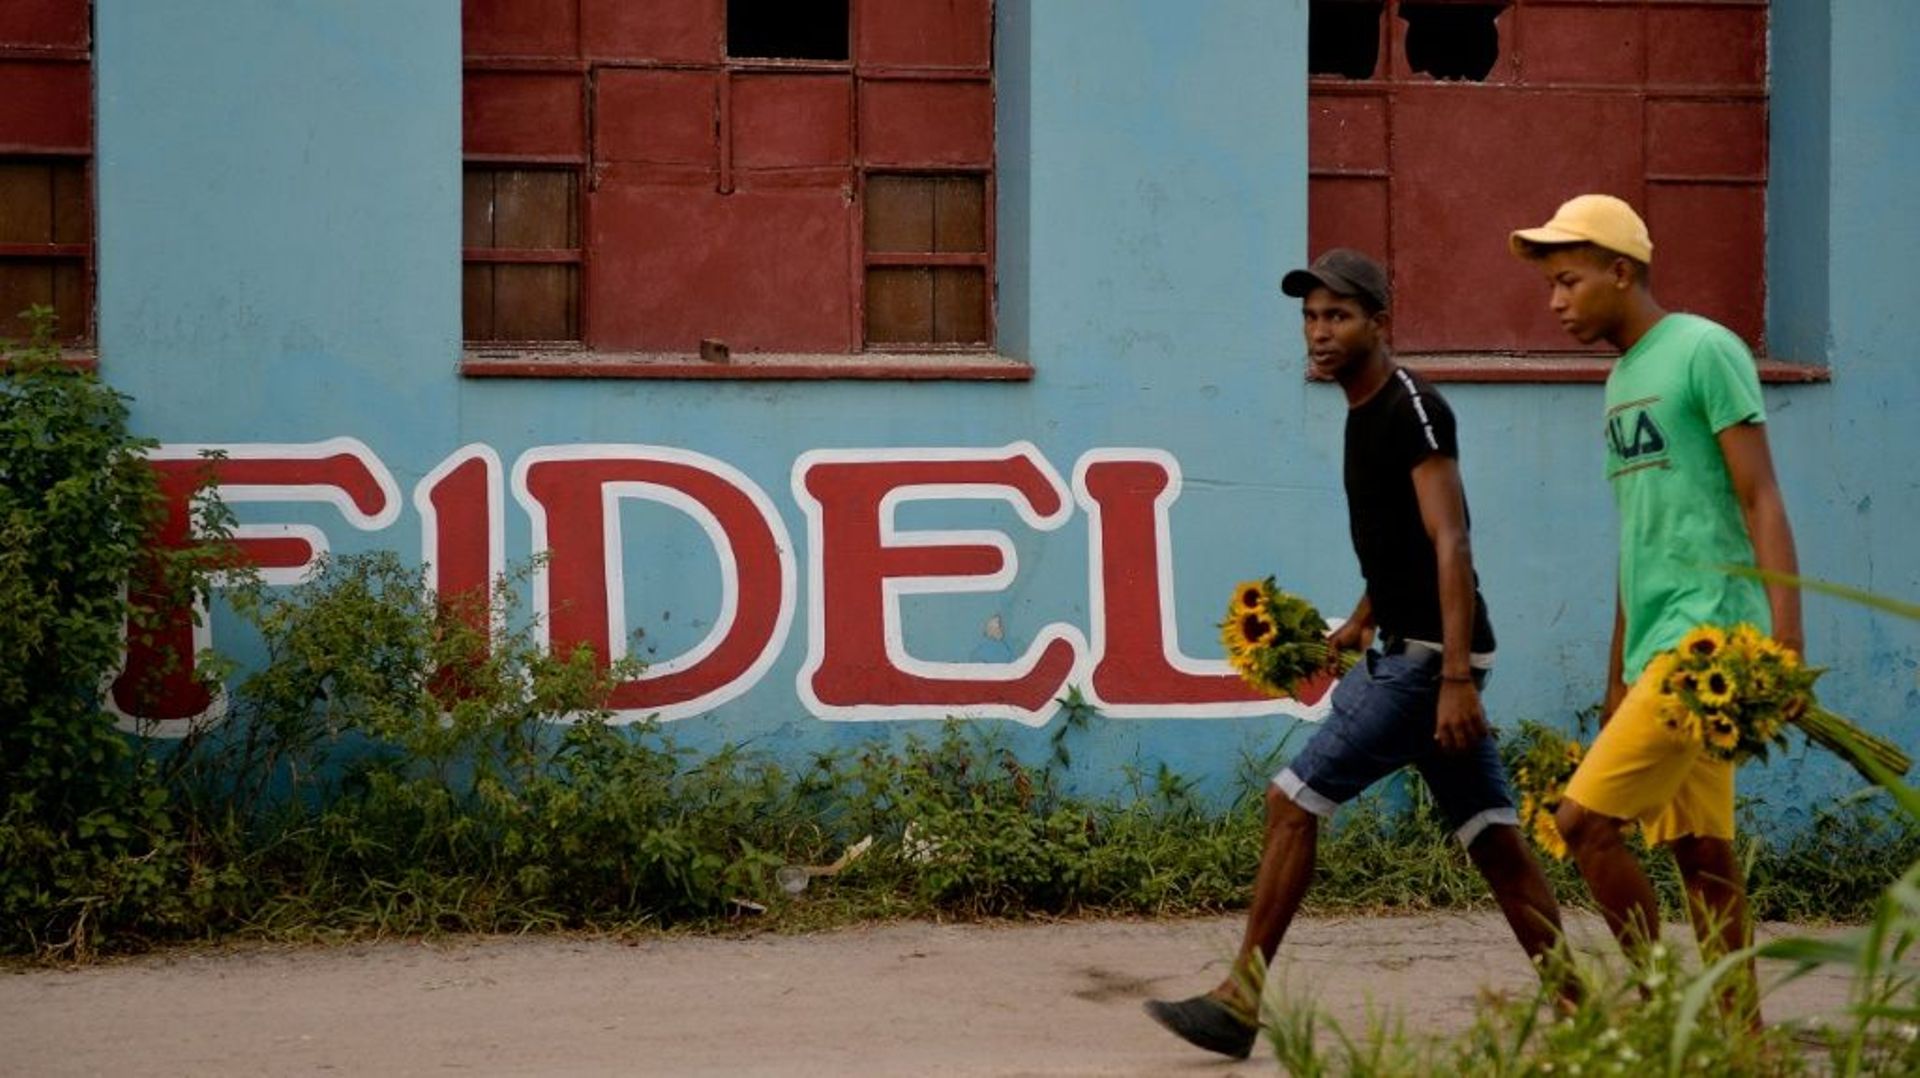 Des Cubains marchent face au nom Fidel inscrit sur un mur, à La Havane le 21 novembre 2019